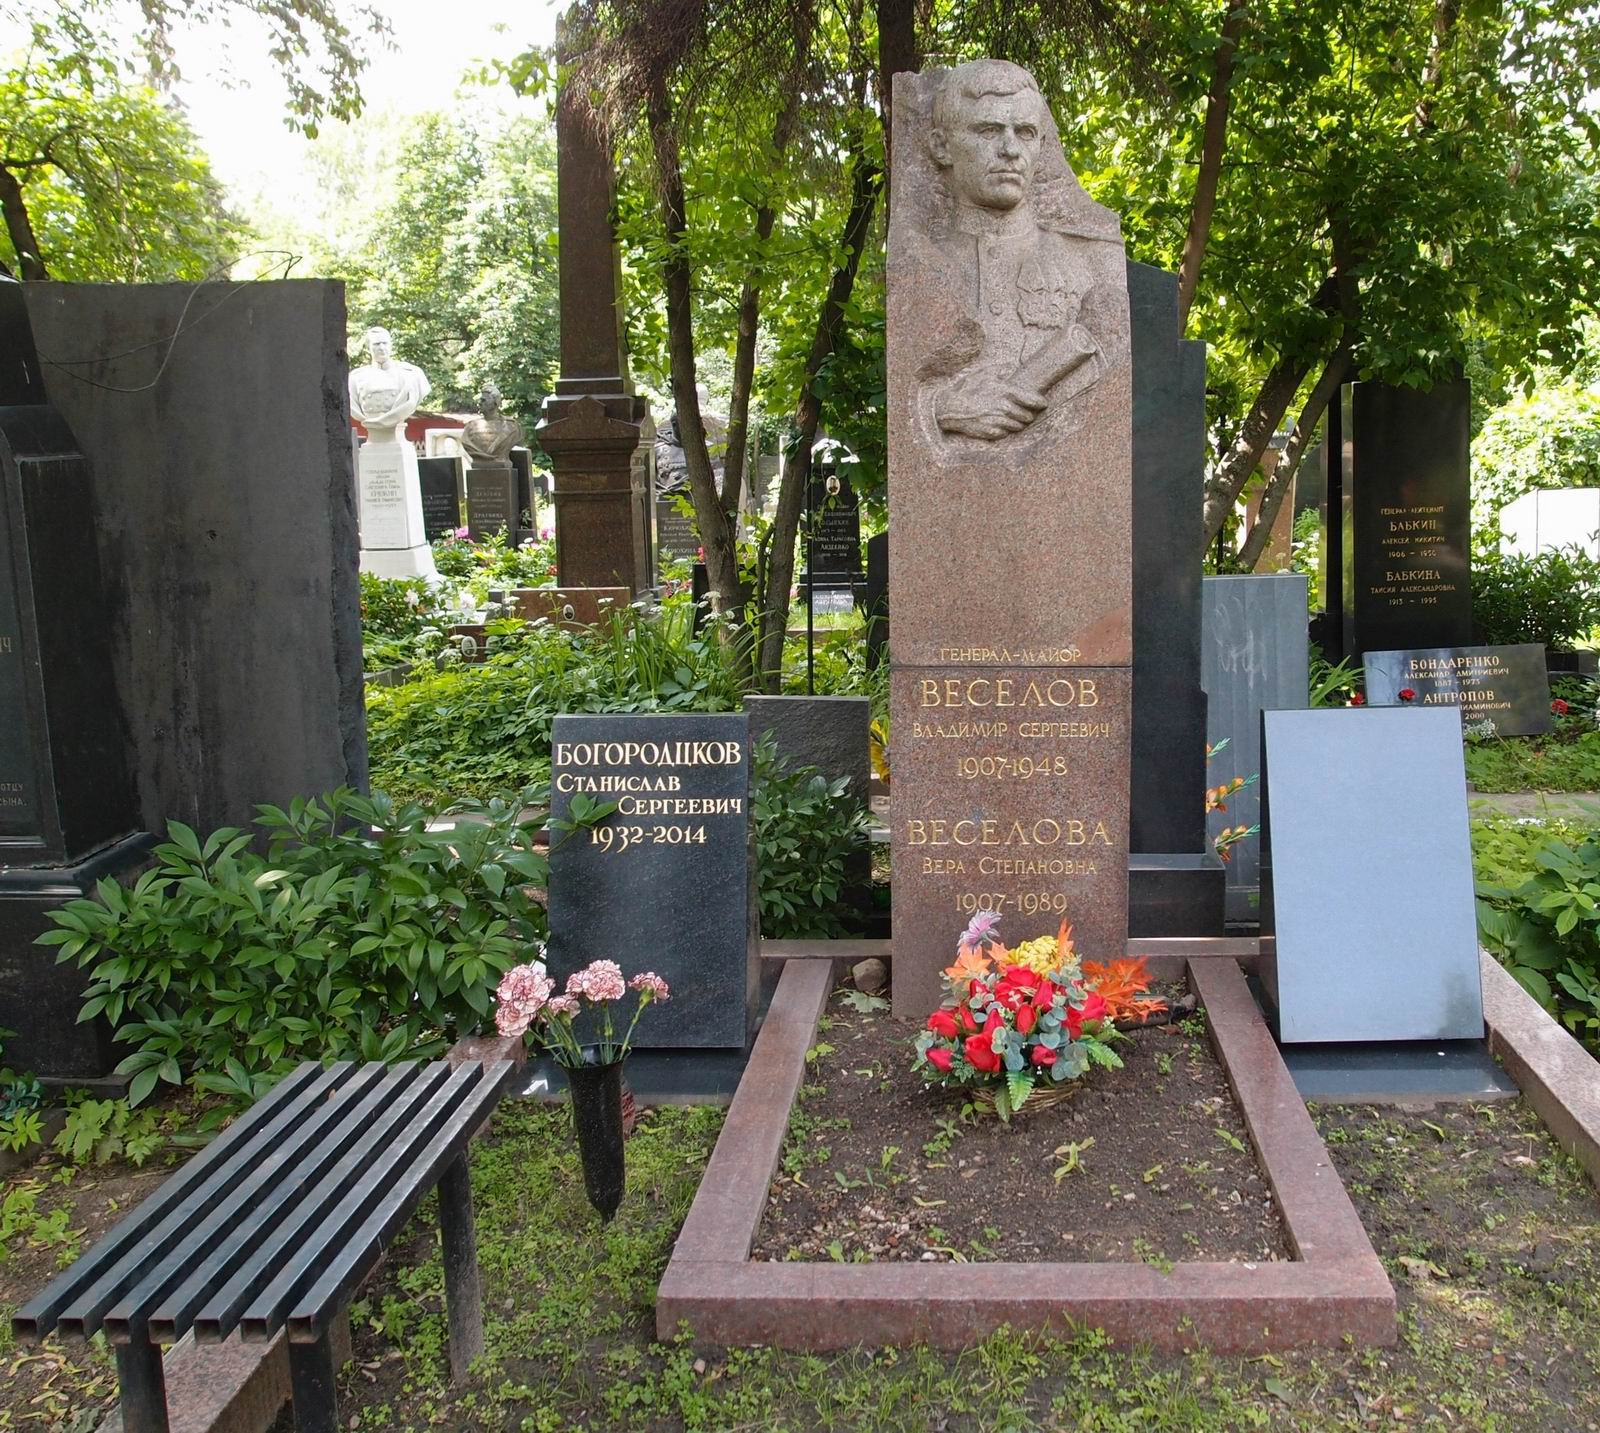 Памятник на могиле Веселова В.С. (1907-1948), ск. И.Першудчев, И.Макагон, арх. Г.Ткачёв, на Новодевичьем кладбище (4-18-10).